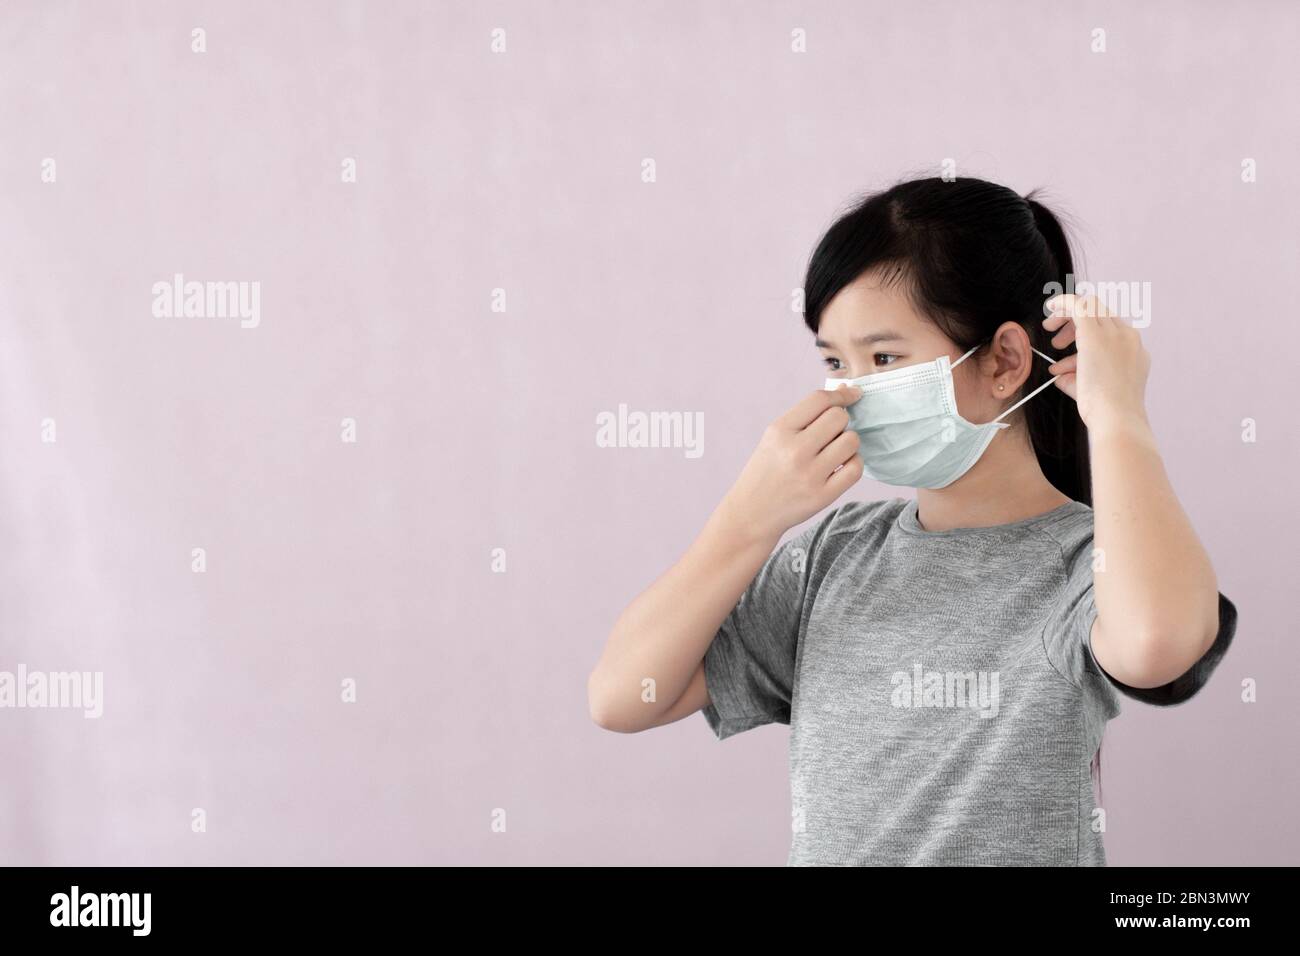 Kleines Mädchen mit steriler Maske auf grauem Hintergrund isoliert Coronavirus & PM 2.5 Luftverschmutzung zu verhindern, zeigen asiatische Mädchen, wie man Virus prot tragen Stockfoto